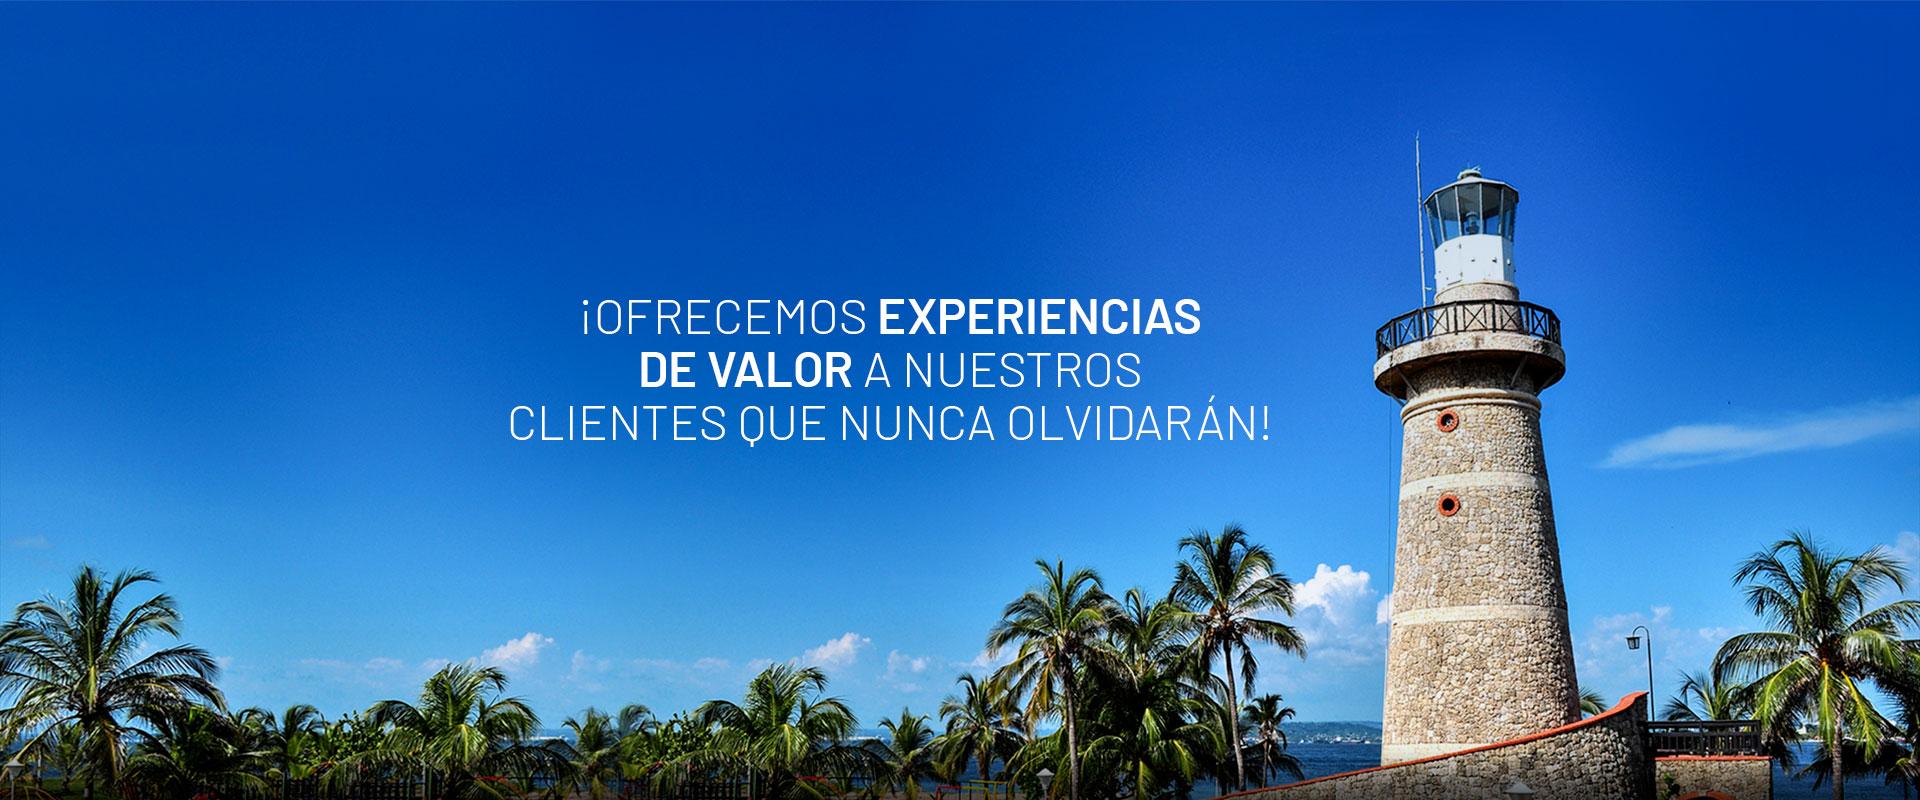 Ofrecemos experiencias de valor - Club Naval Cartagena